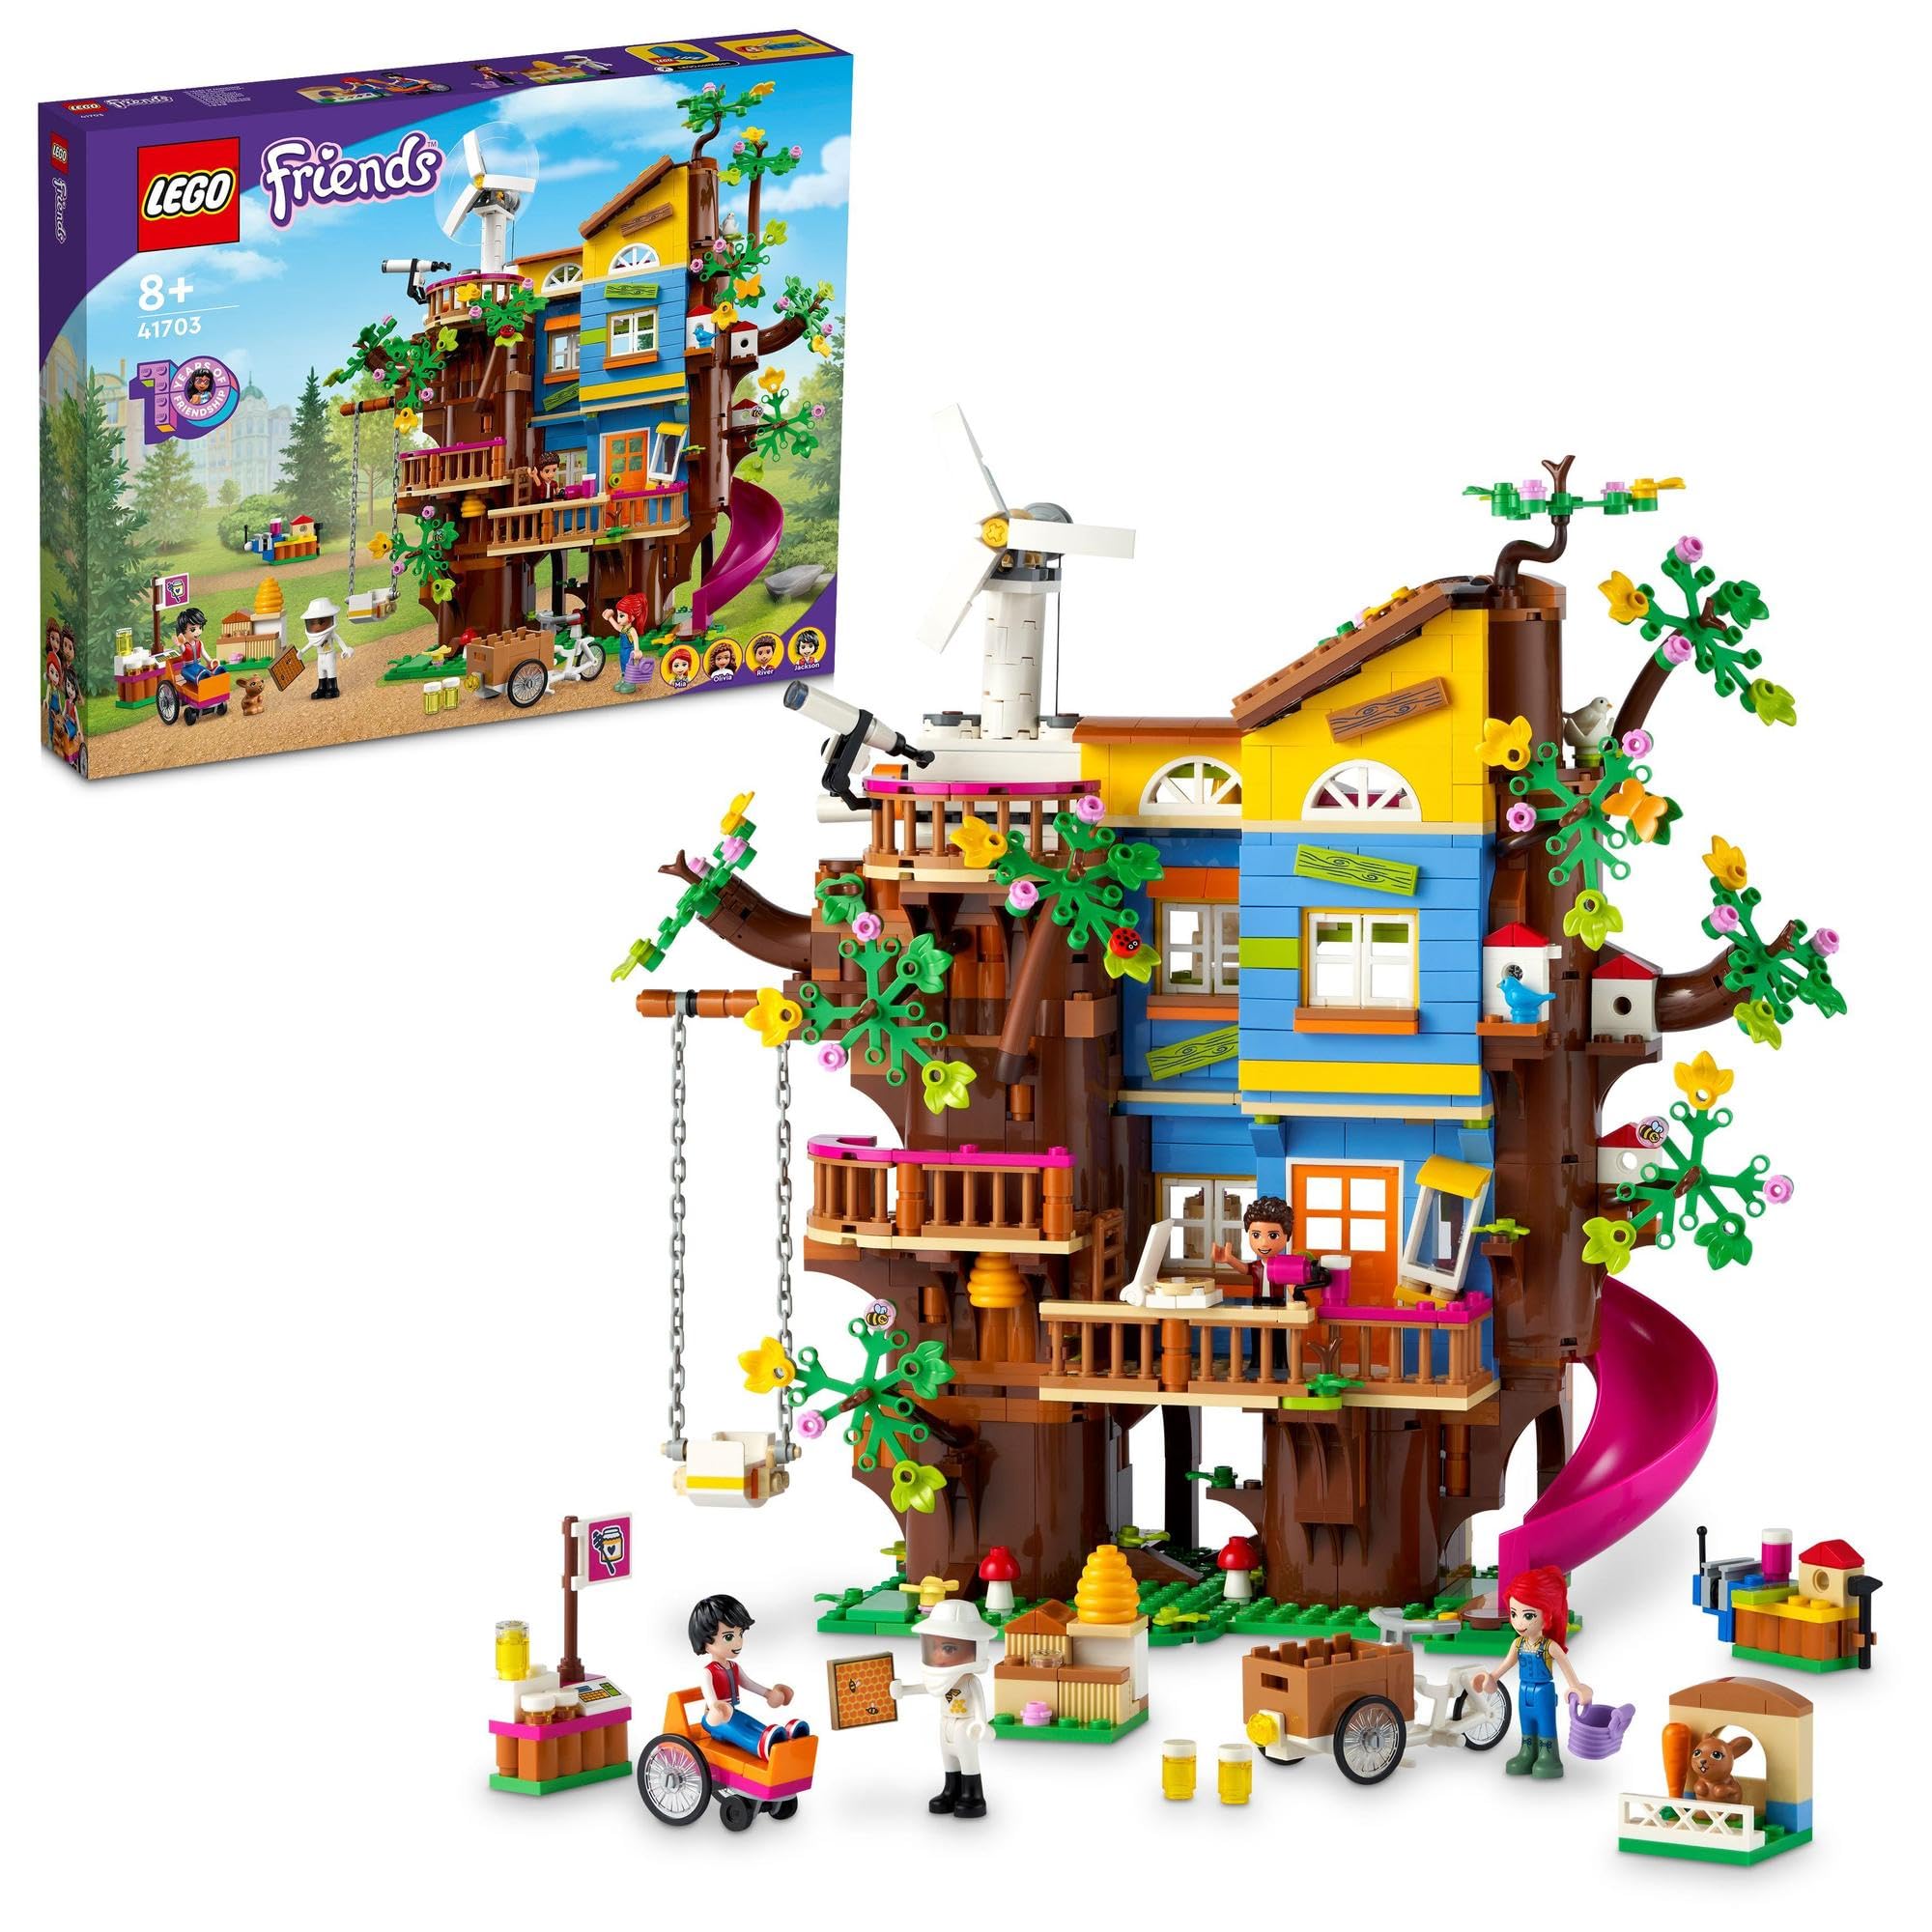 レゴ(LEGO) フレンズ フレンドシップ ツリーハウス クリスマスプレゼント クリスマス 41703 おもちゃ ブロック 家 おうち お人形 ドール 女の子 8歳以上